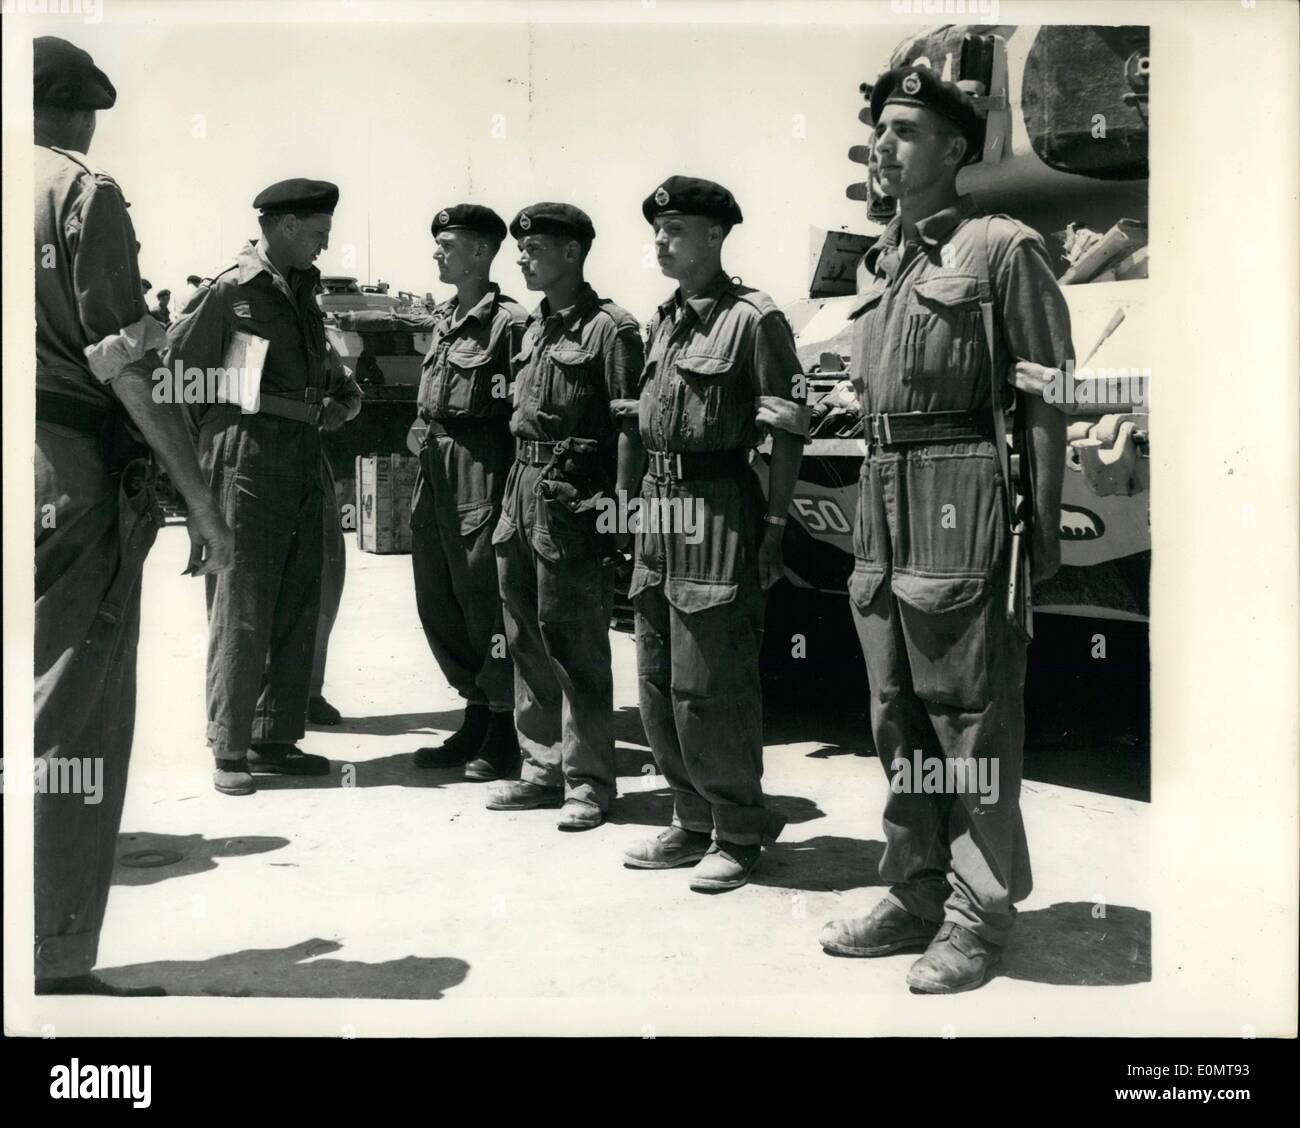 8. August 1956 - mit '' Desert Rats von 1956''. Die '' vergessen Armee '' - bereit für Emergency.: Wenig spricht über die "Desert Rats von 1956'' - ansonsten 10.. Panzer-Division - die Königin Bucht umfasst. Sie sind ständig im Training mit ihren Panzern und alle Arten von modernen militärischen Ausrüstung - unter der prallen - in der libyschen Wüste gesehen werden. Foto zeigt Lieut Col. C. Armitage von der Königin Buchten - inspiziert eine Crew - während der Dienst in der libyschen Wüste. Stockfoto